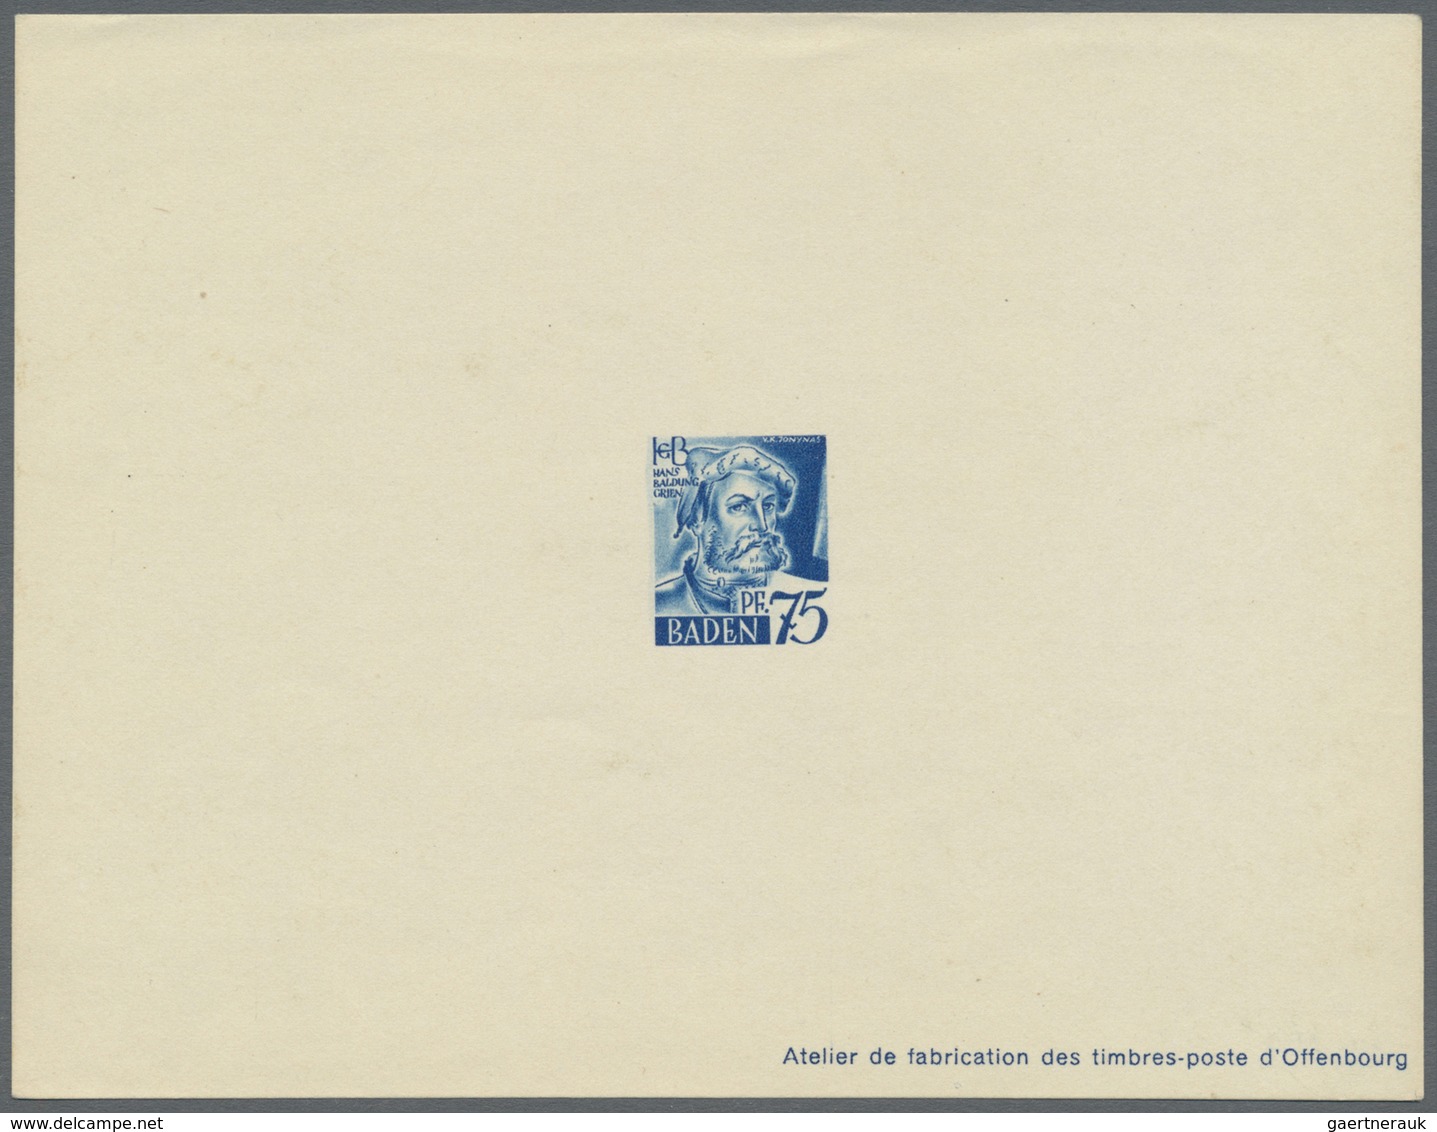 (*) Französische Zone - Baden: 1947, 2 Pfg. bis 1 M. Freimarken als Ministerblocks auf Kartonpapier mit